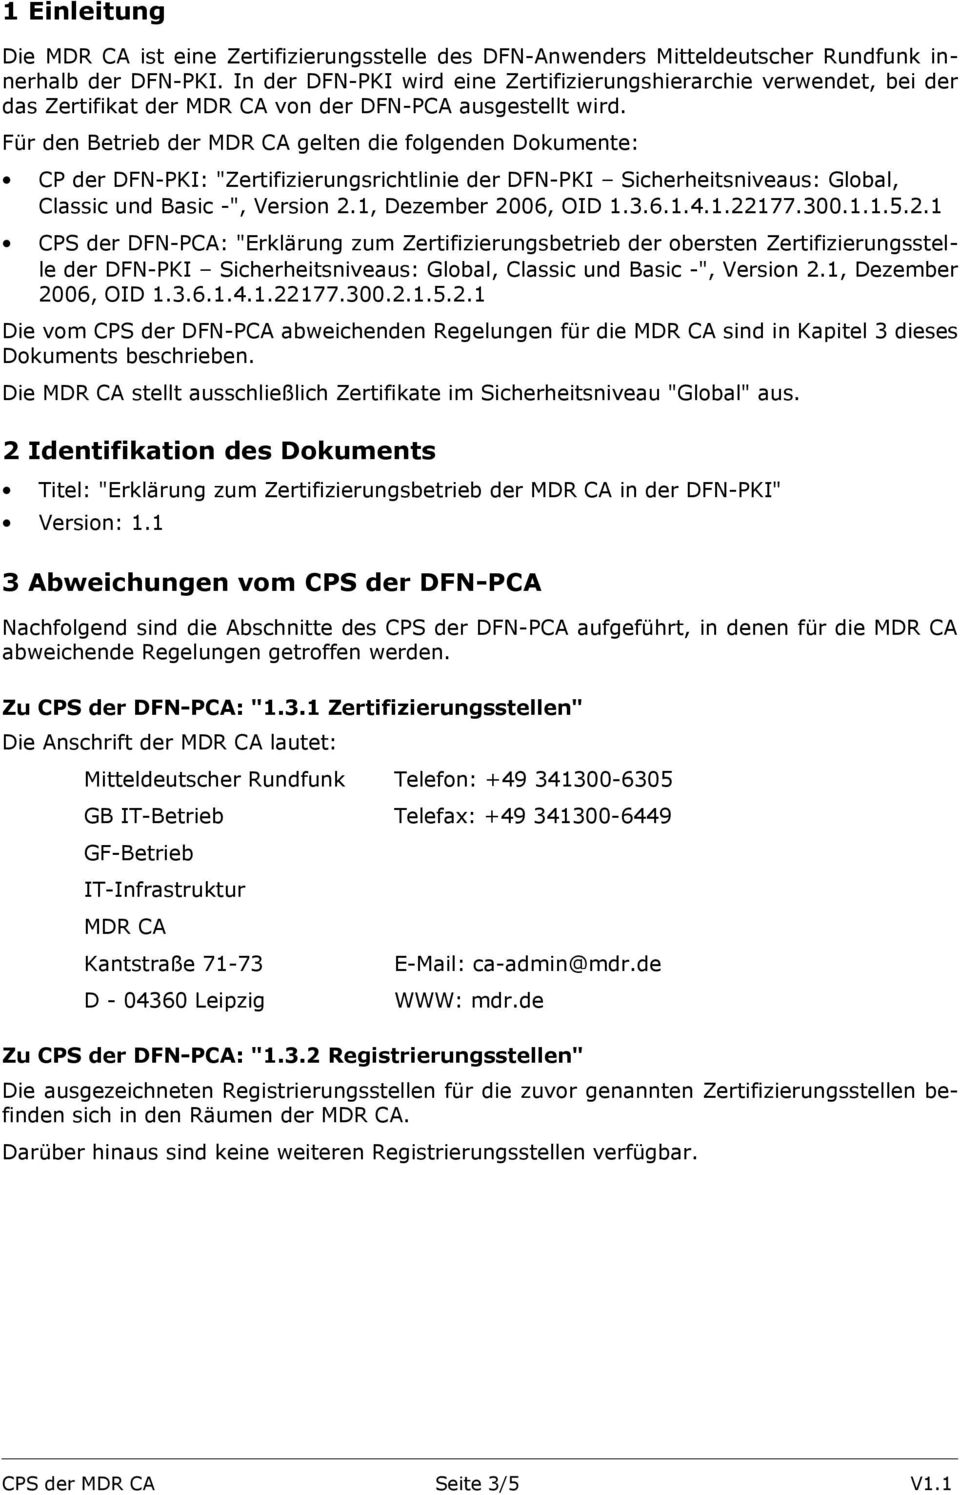 Für den Betrieb der MDR CA gelten die folgenden Dokumente: CP der DFN-PKI: "Zertifizierungsrichtlinie der DFN-PKI Sicherheitsniveaus: Global, Classic und Basic -", Version 2.1, Dezember 2006, OID 1.3.